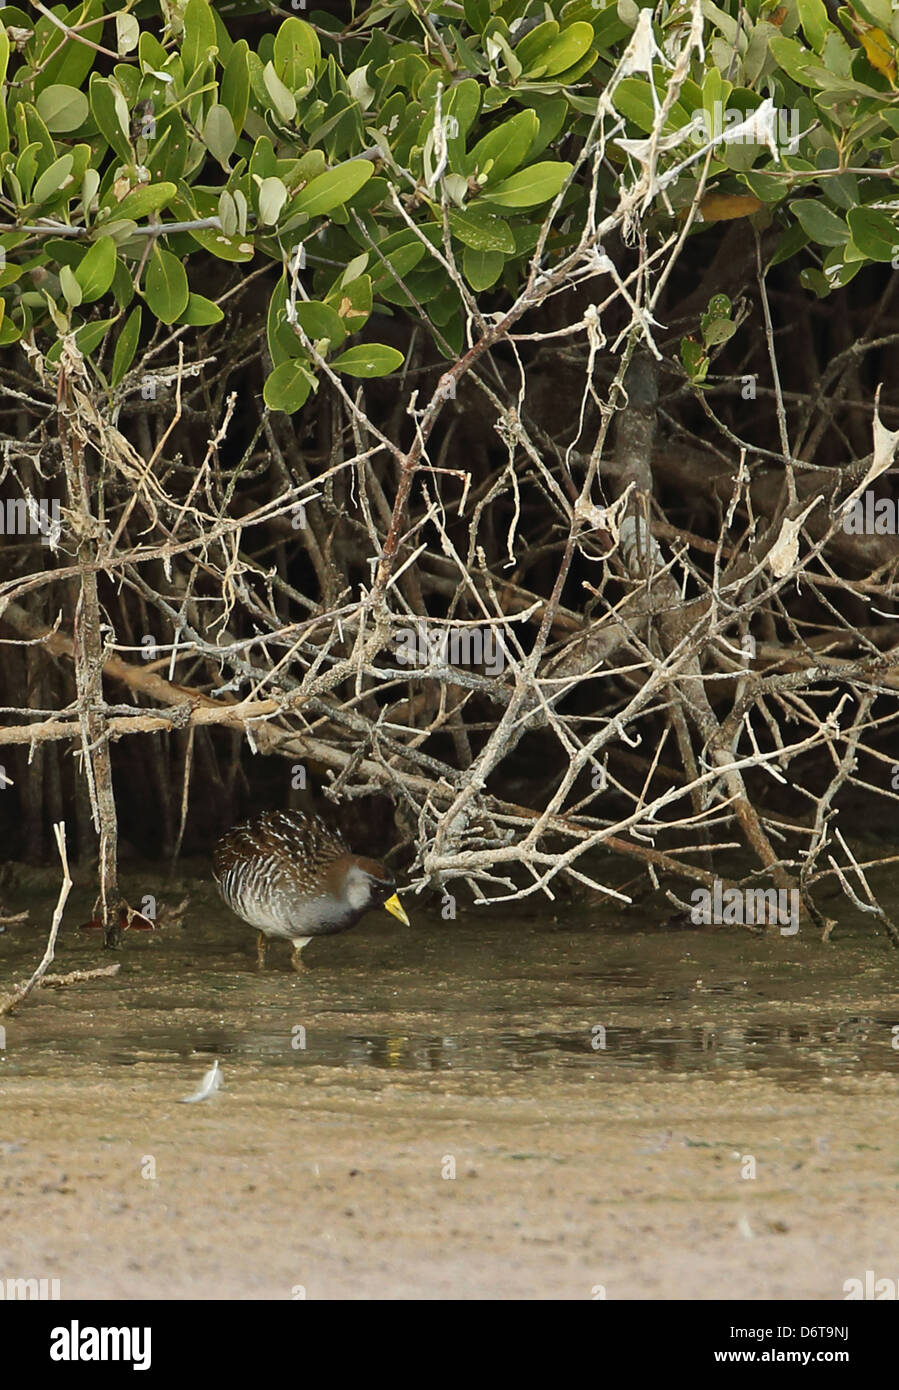 Sora Rail (Porzana carolina) adult, feeding below mangroves, Cayo Coco, Jardines del Rey, Ciego de Avila Province, Cuba, March Stock Photo